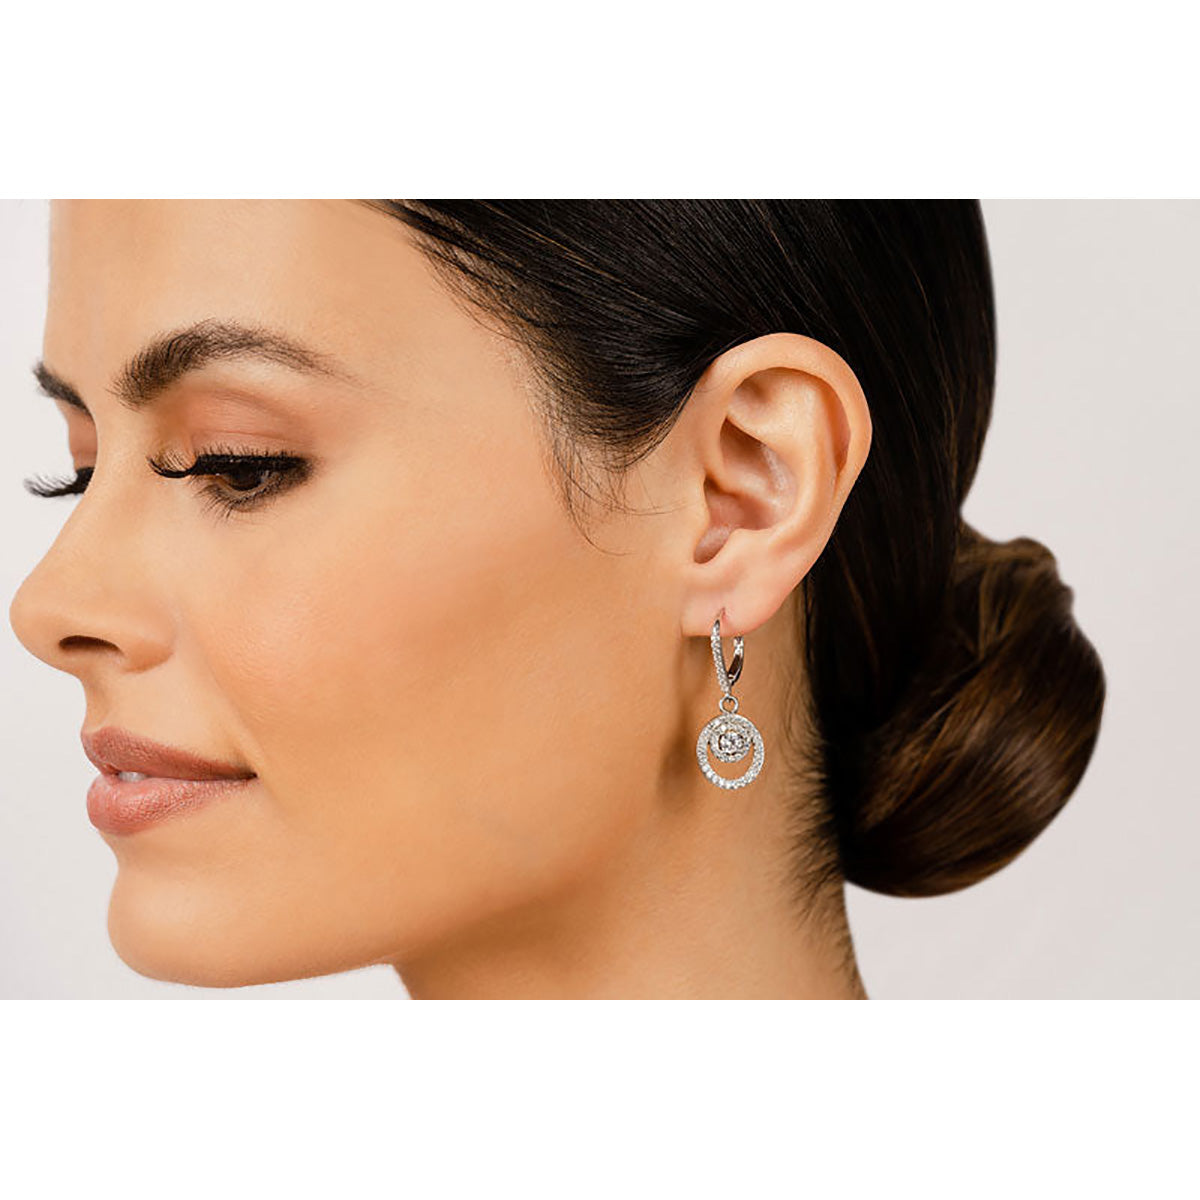 Diamond Circle Pendant Shephard Hook Earrings